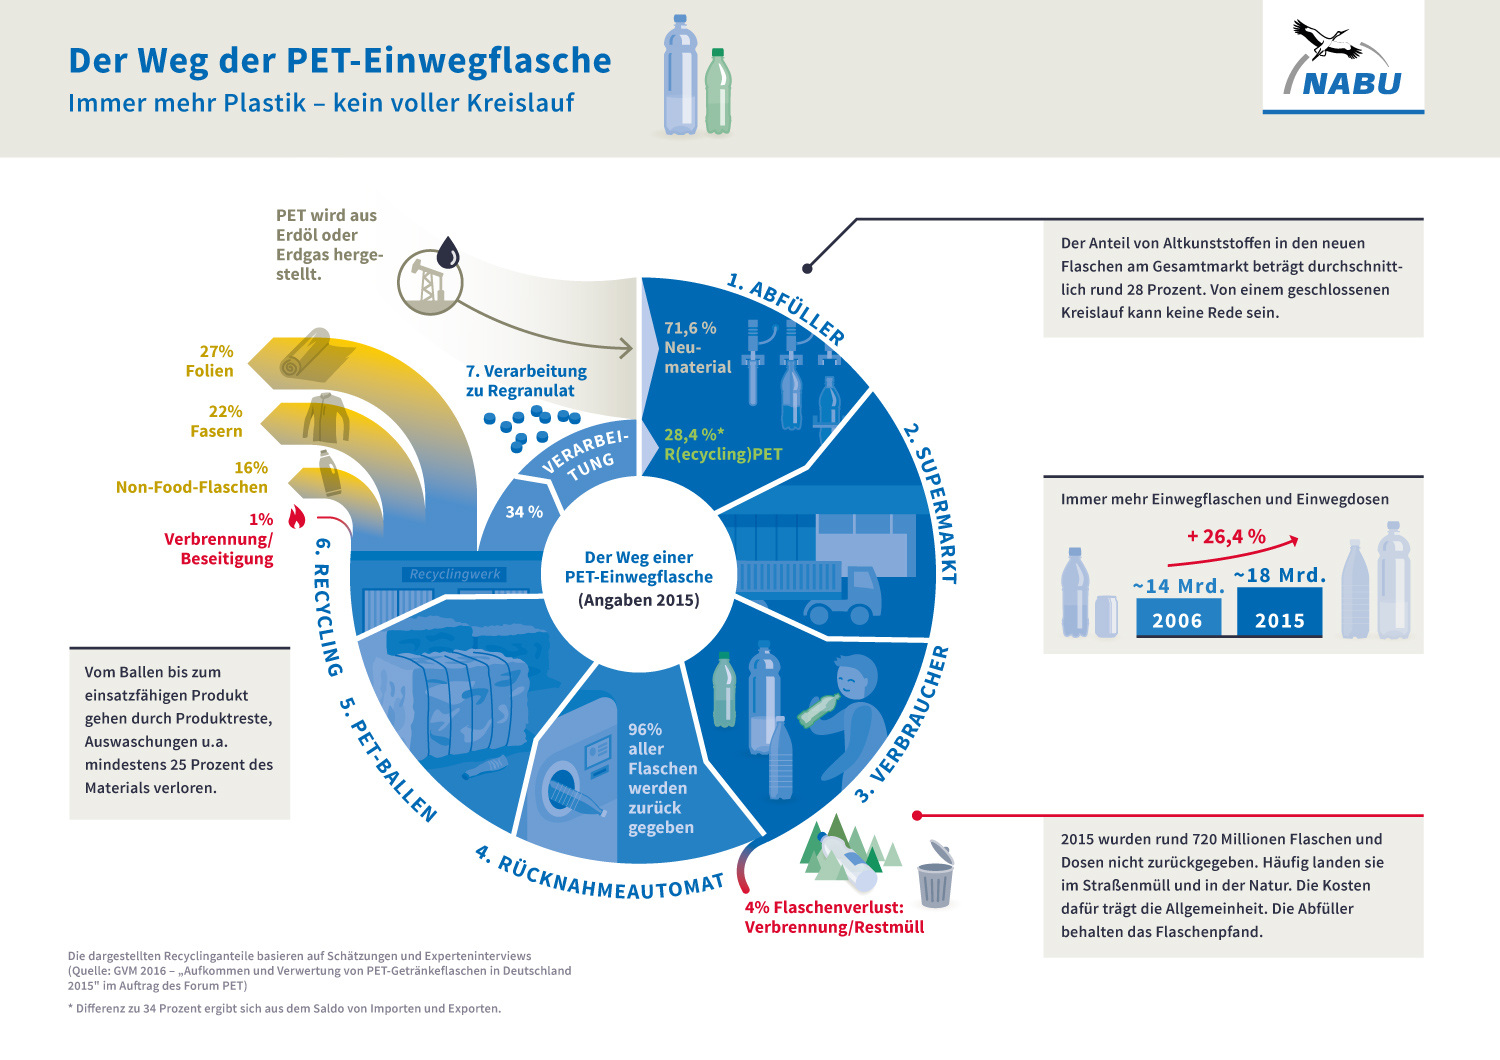 Dortmunder FOM Studierende erfinden neuen Deckel für PET-Einwegflaschen